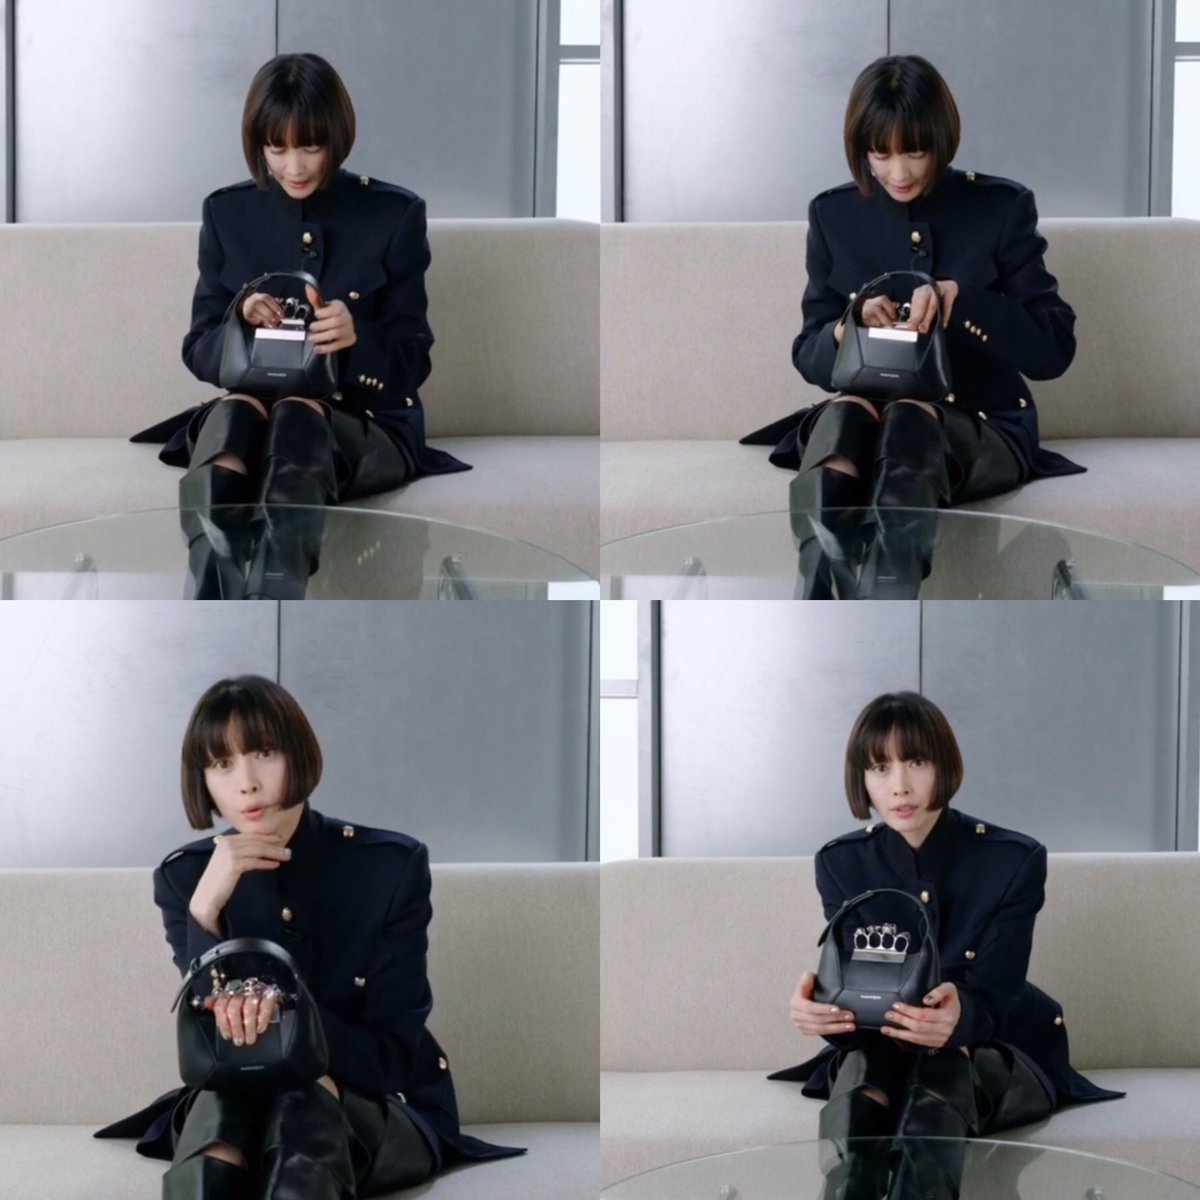 The cutest 🥰

#LeeNayoung #이나영 #VogueKorea 
#AlexanderMcQueen